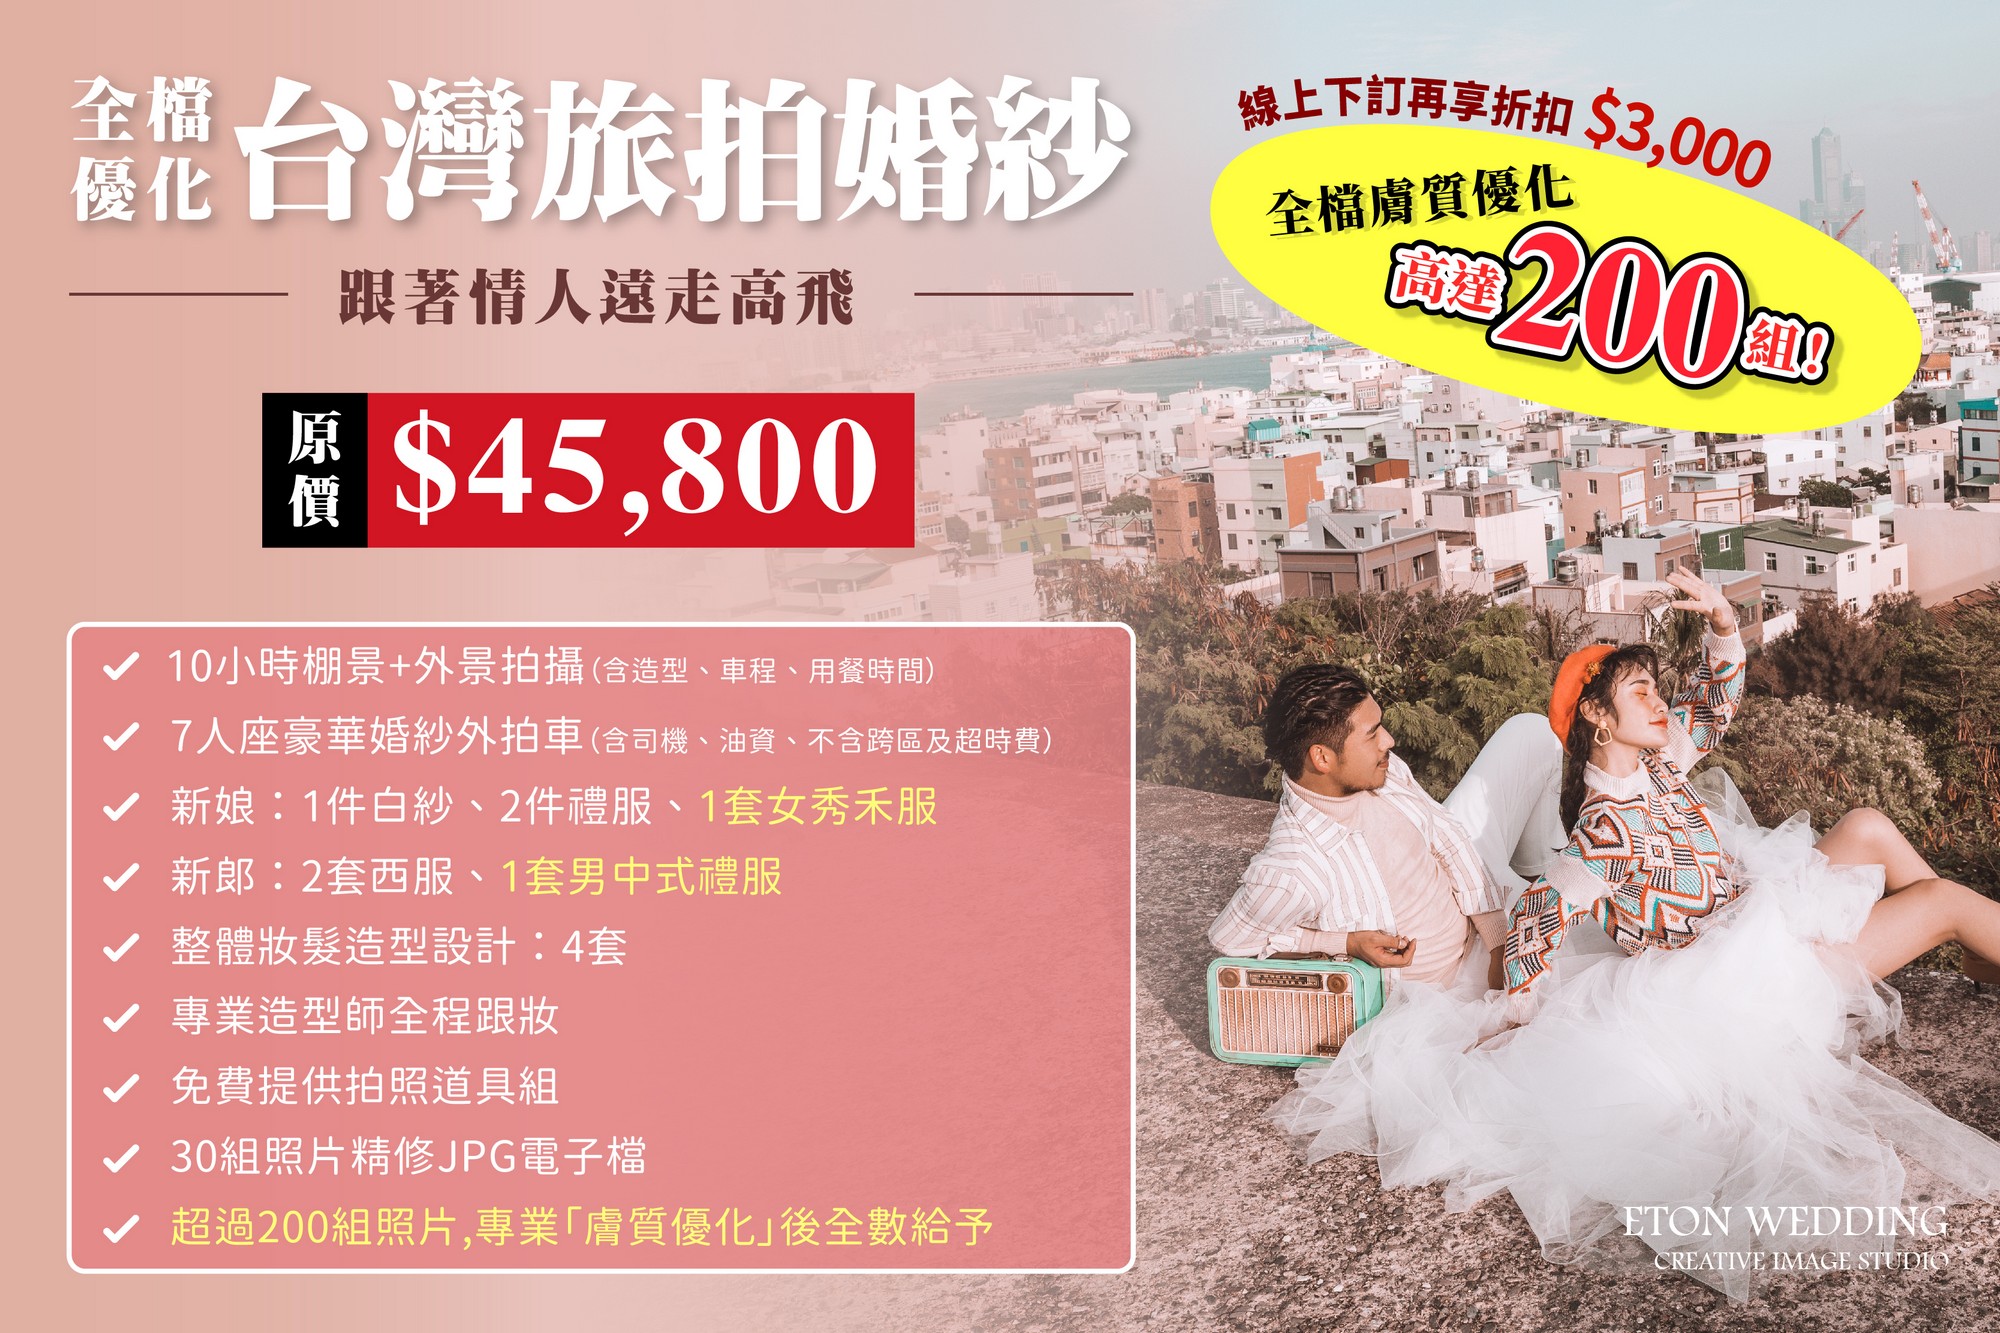 台灣拍婚紗,海外婚紗,旅拍婚紗,台灣婚紗照